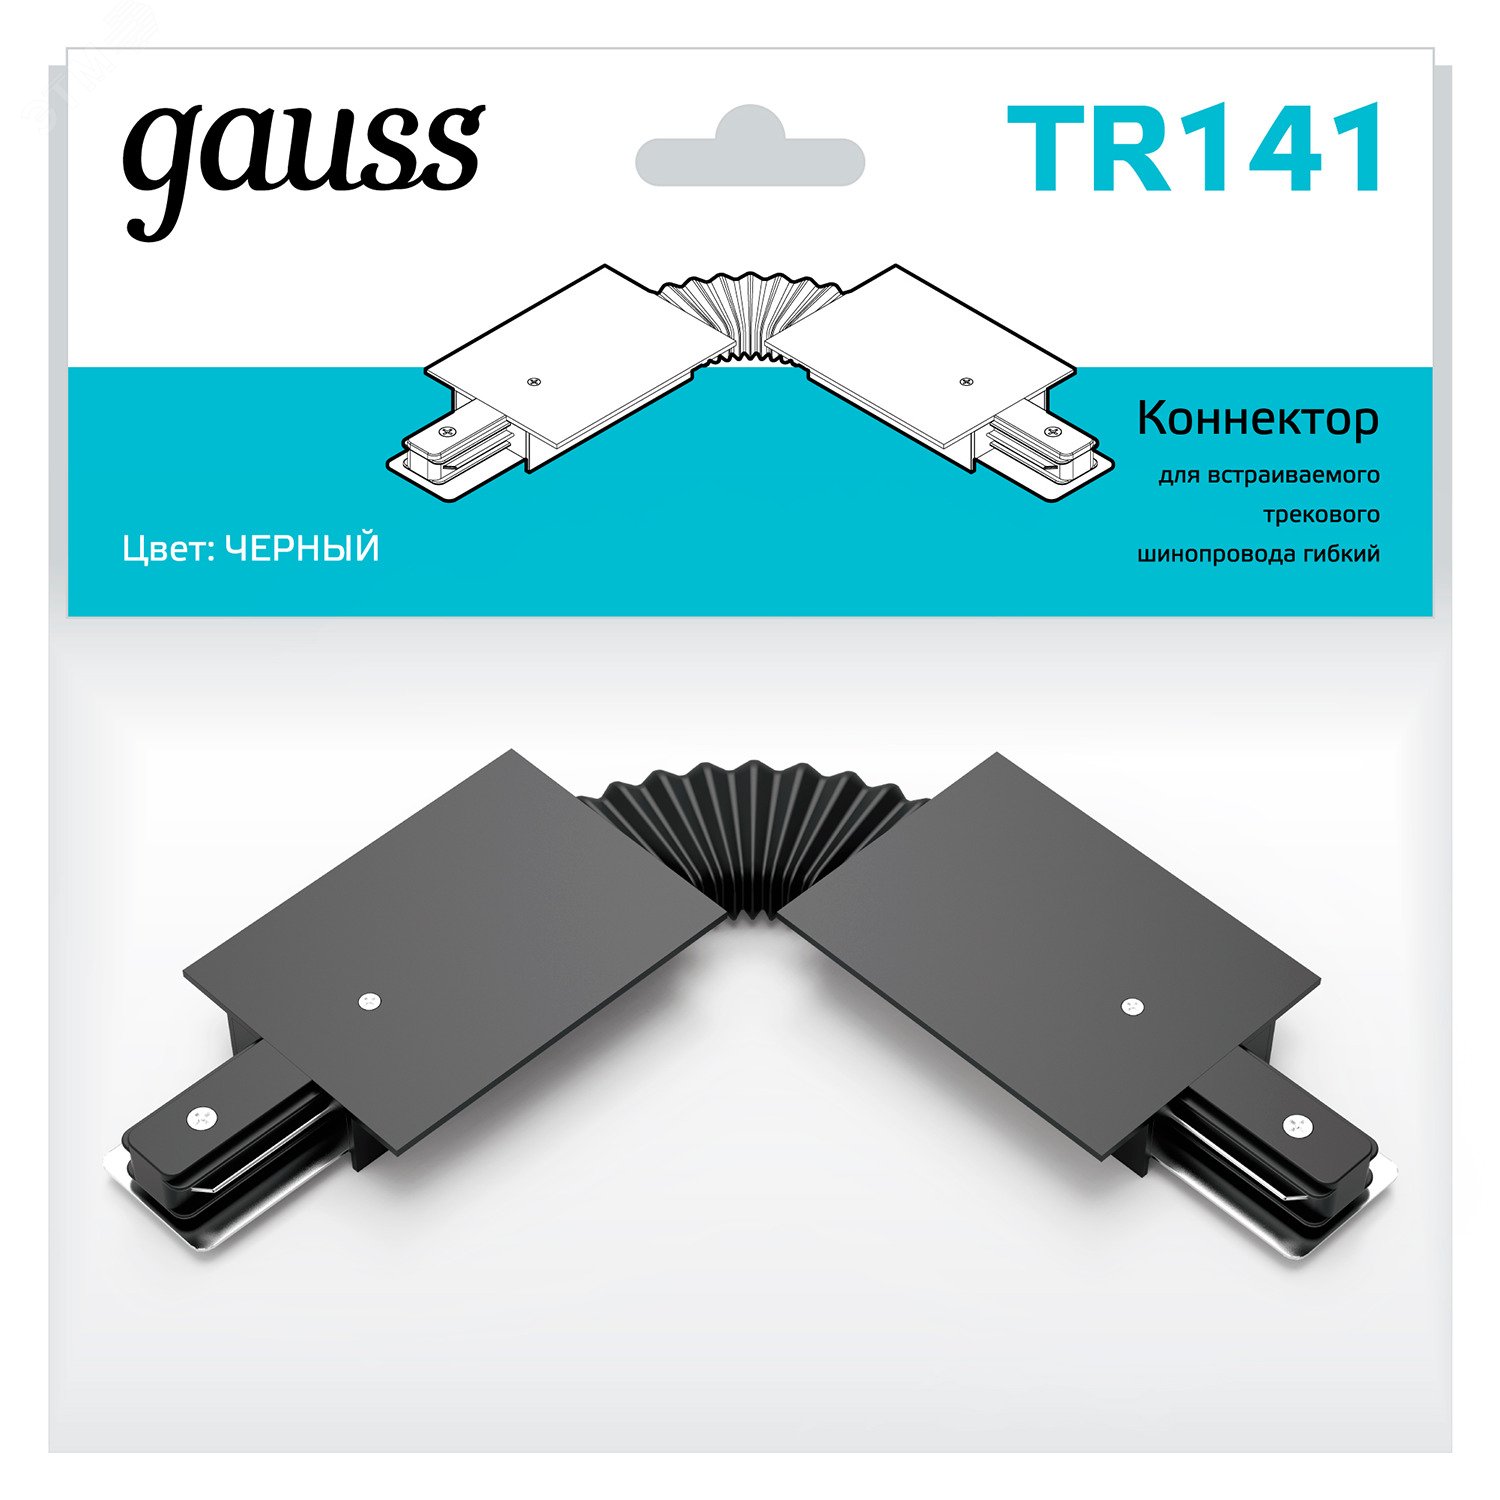 Коннектор для встраиваемых трековых шинопроводов гибкий (I) черный однофазный TR141 GAUSS - превью 3